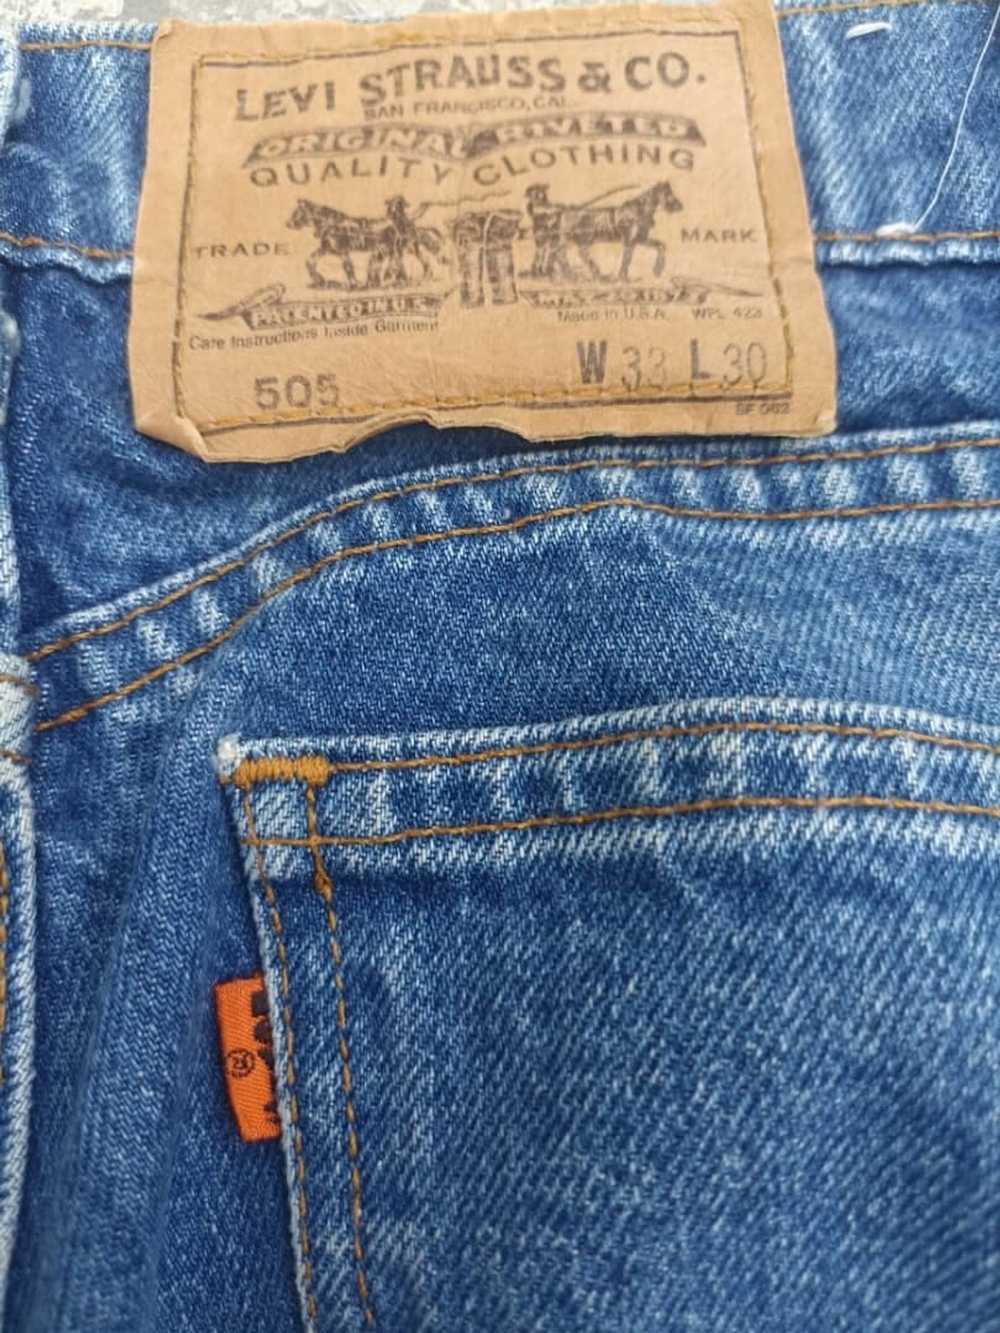 Levi's Vintage Levi's 505 orange tab jeans - image 3